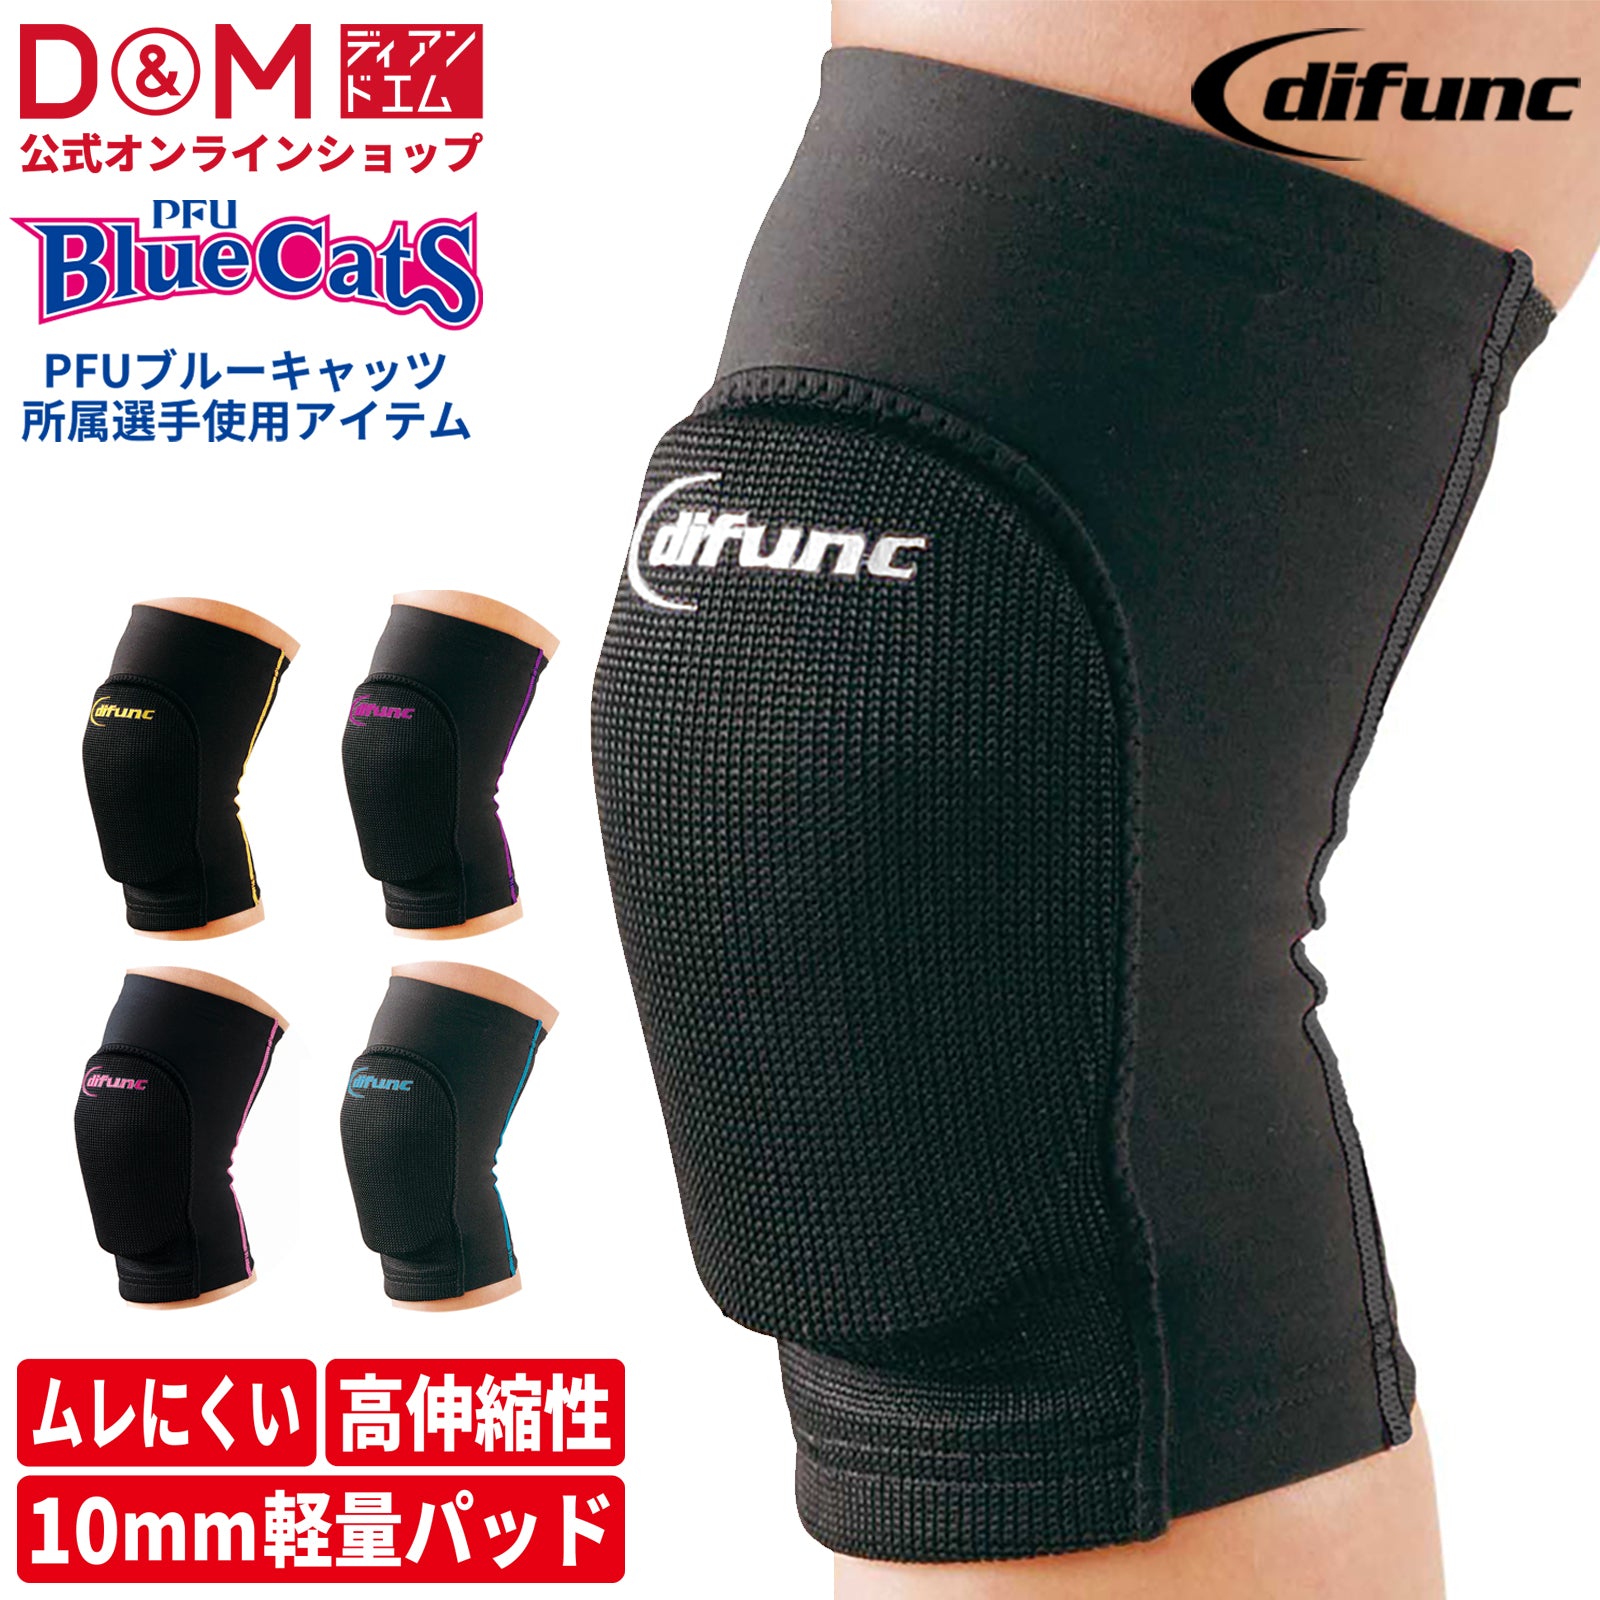 difunc ディファンク トリコットニーパッド 膝サポーター 10mm厚パッド 1個入 日本製